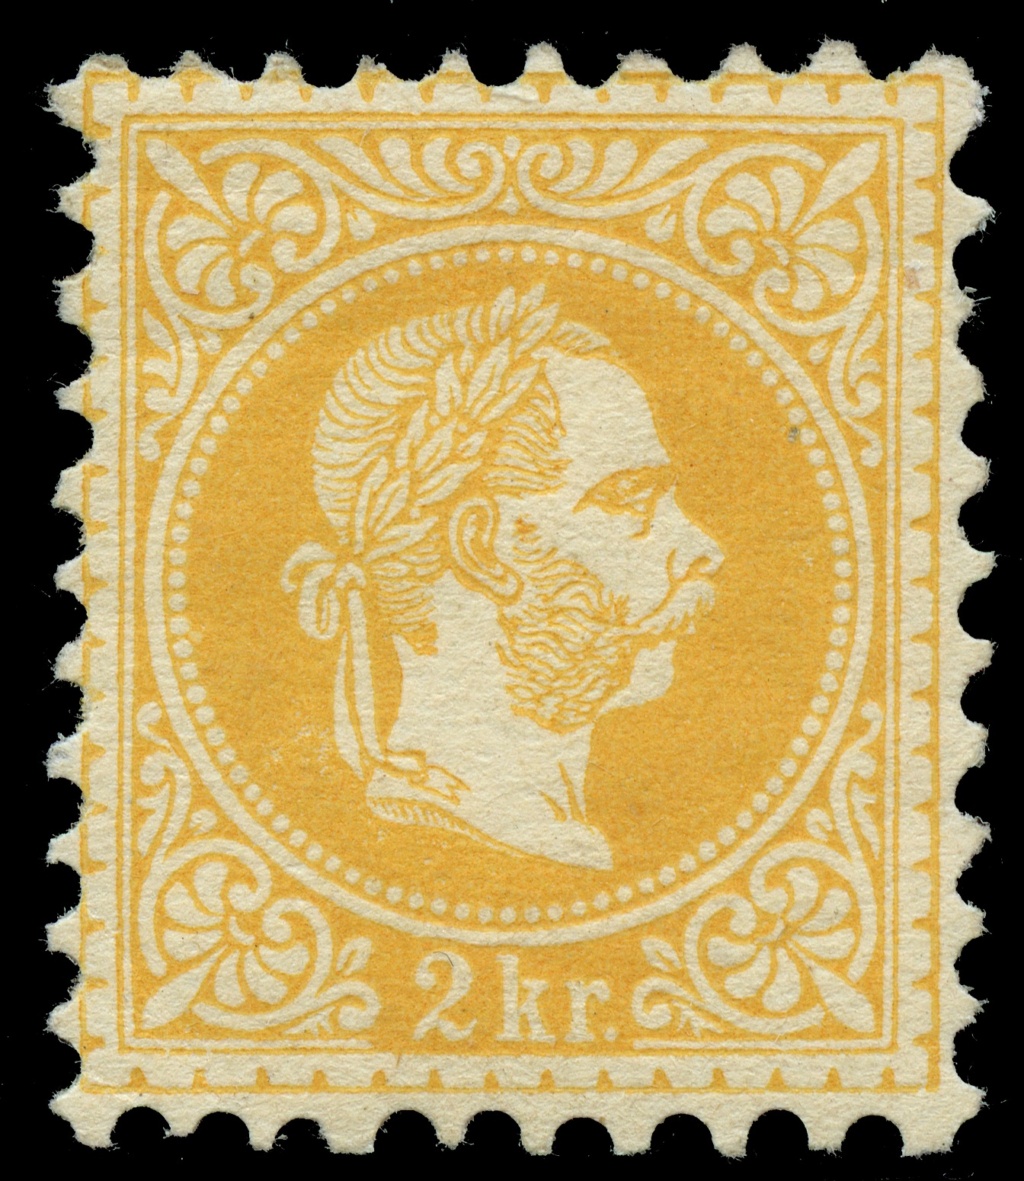 stempel - Freimarken-Ausgabe 1867 : Kopfbildnis Kaiser Franz Joseph I - Seite 23 Ank_3520